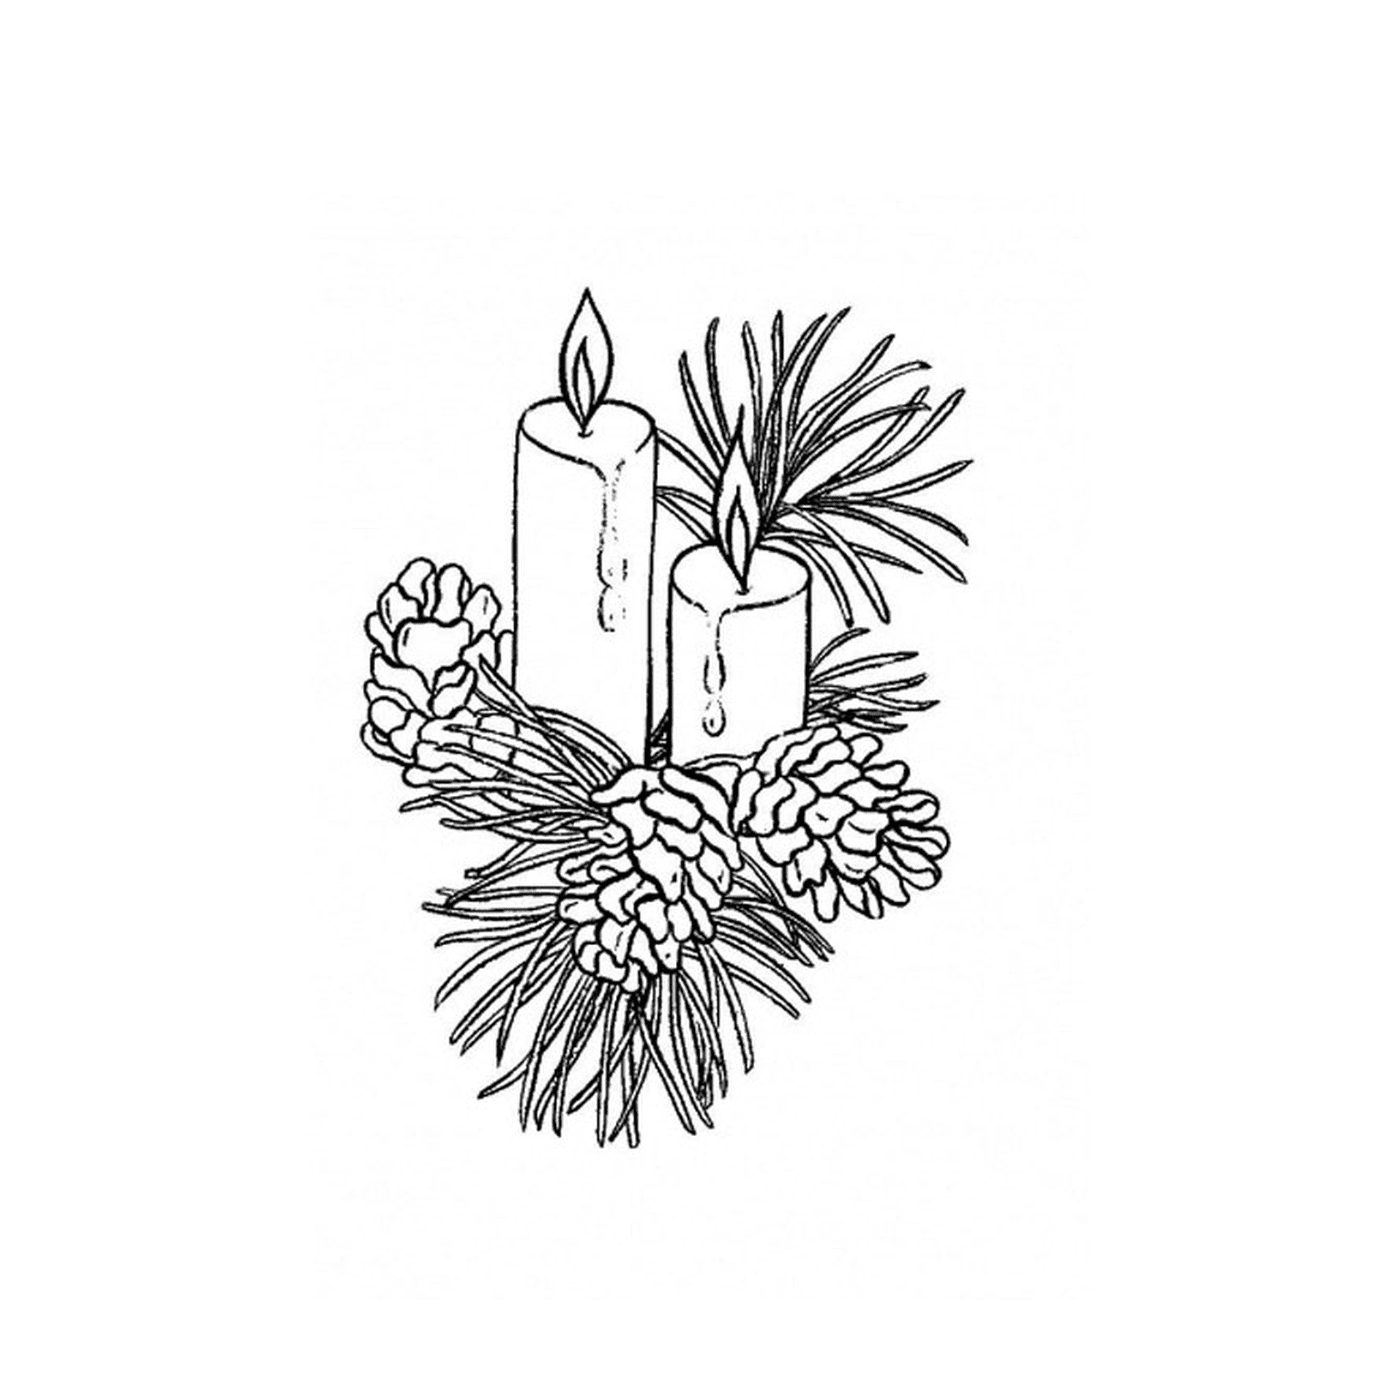   Deux bougies allumées sur une branche de pin 